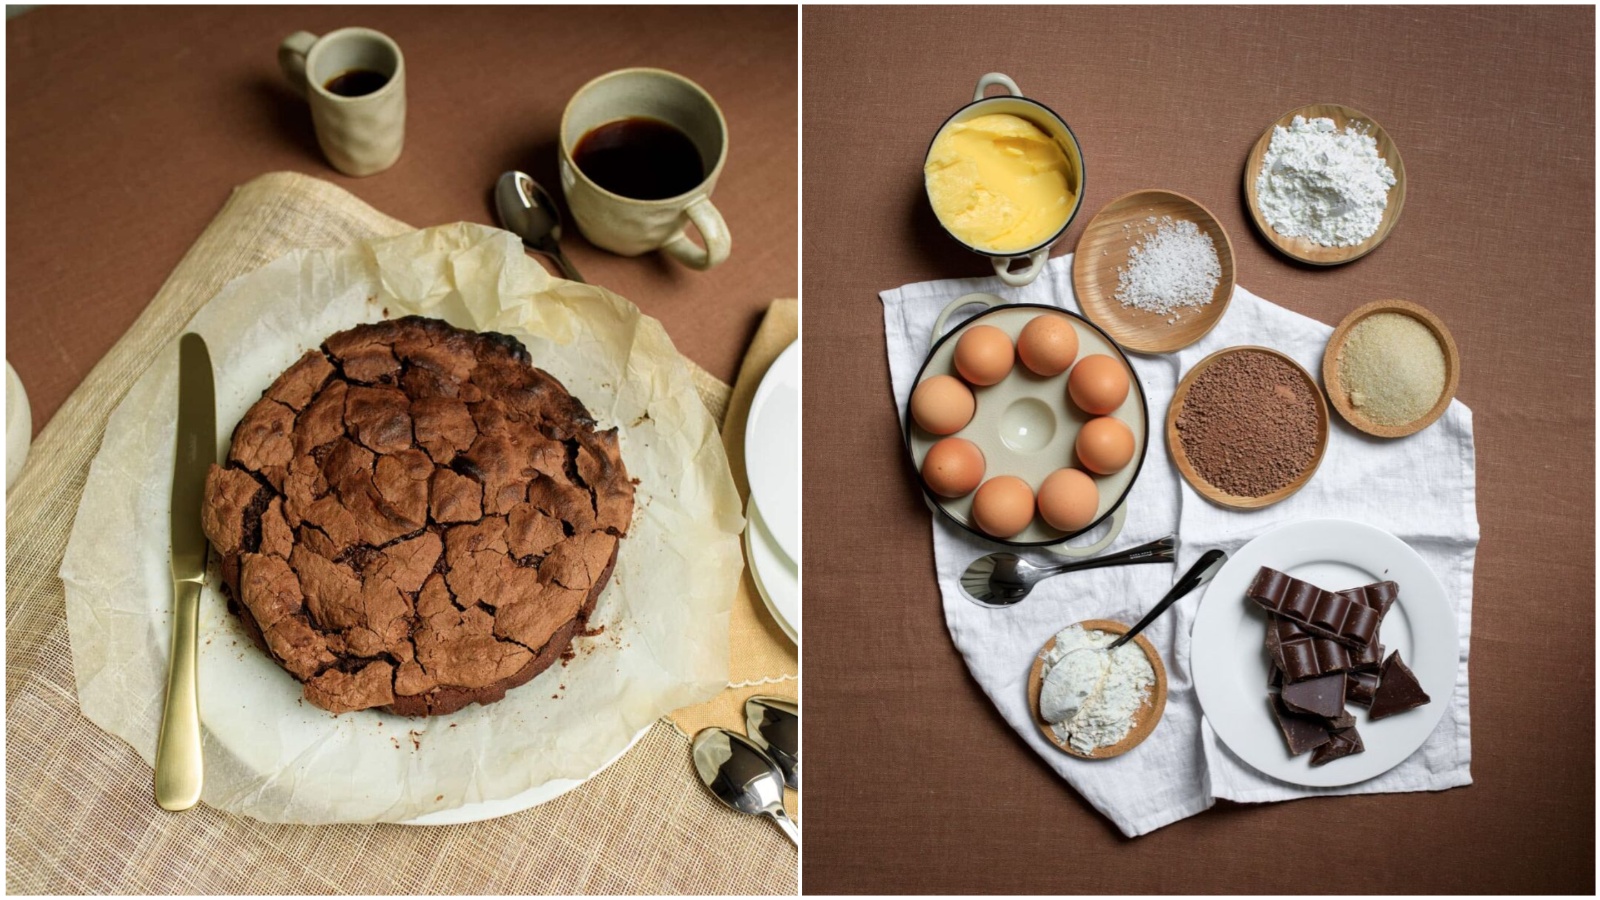 Vikend preporuka: Zara Home ima recept za ukusni i nikad jednostavniji tart od čokolade